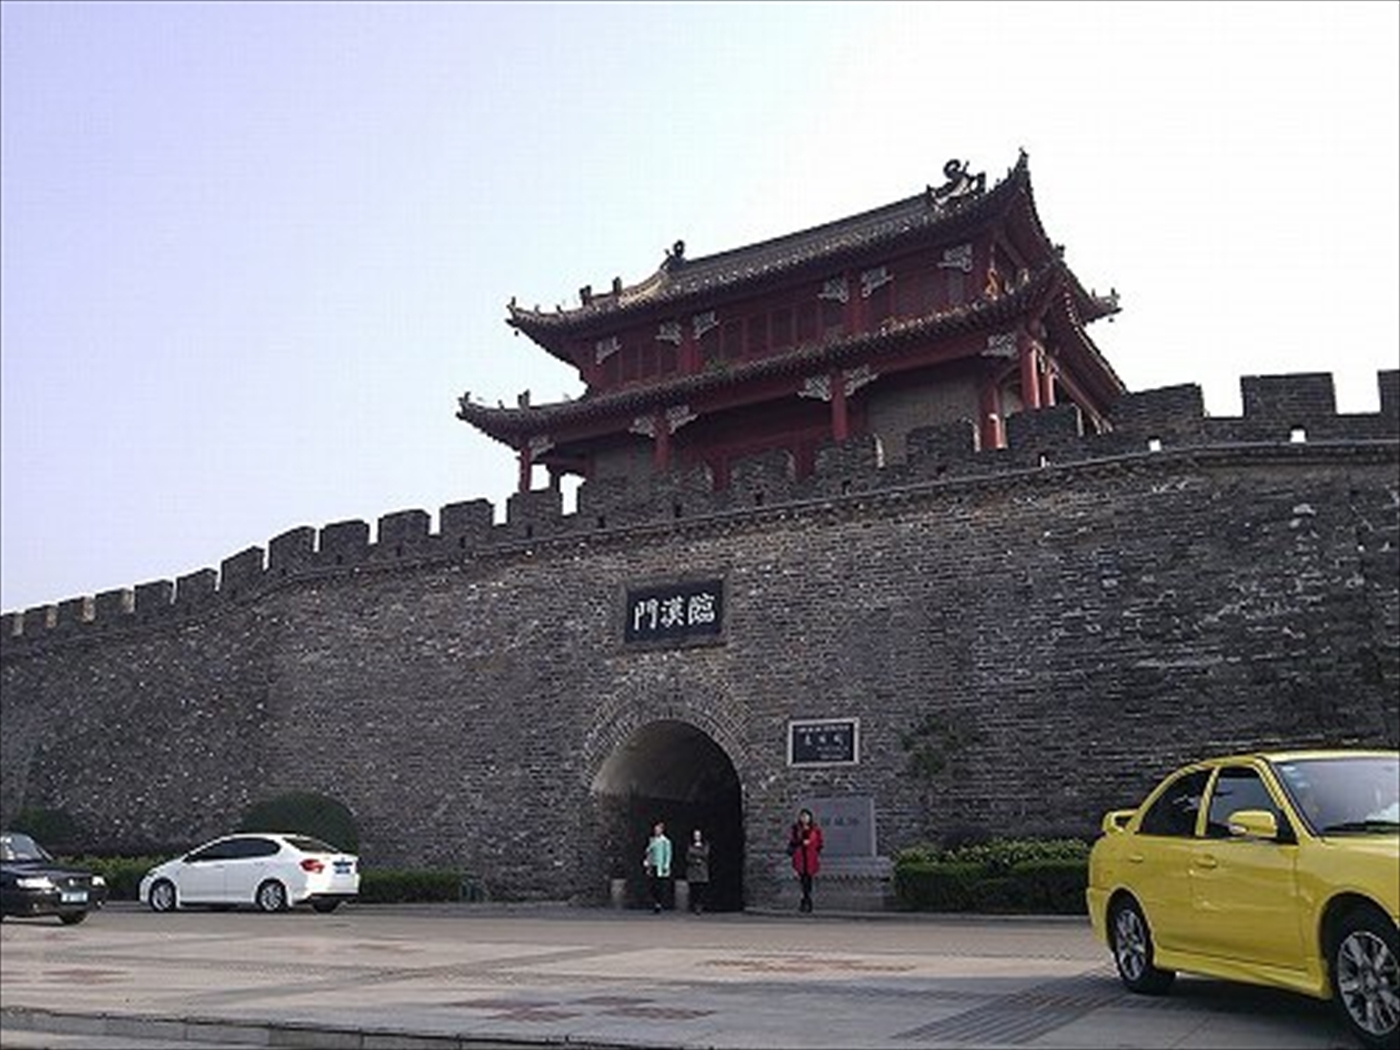 漢王朝時代に建てられた襄阳古城。出典: wikipedia.org